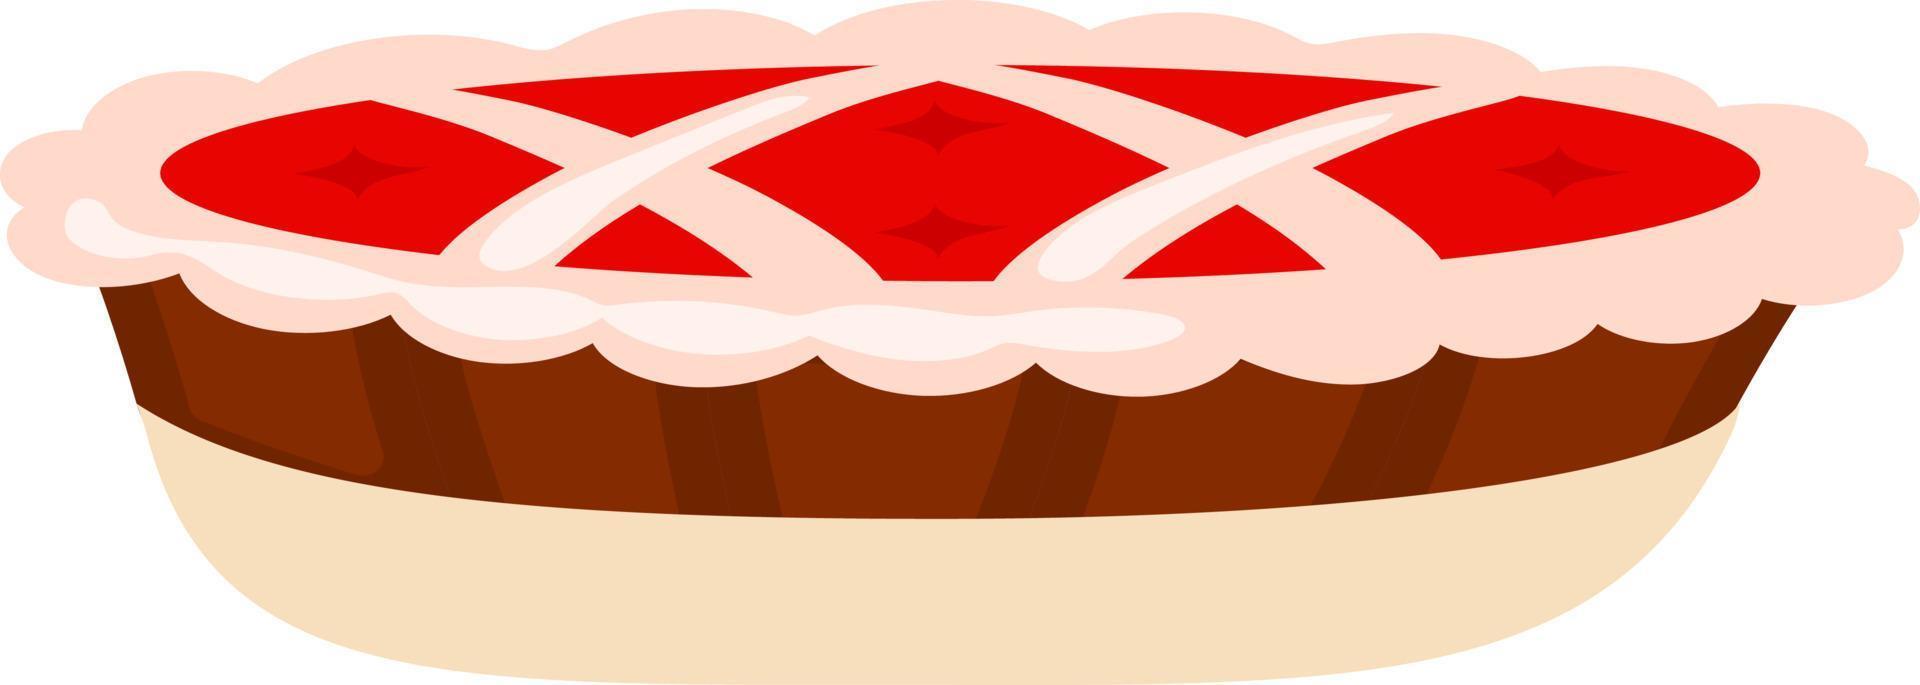 cranberry taart semi egale kleur vector-object. vakantie dessert. full-size item op wit. gerecht bereiden voor Thanksgiving-diner. eenvoudige cartoonstijlillustratie voor webgrafisch ontwerp en animatie vector